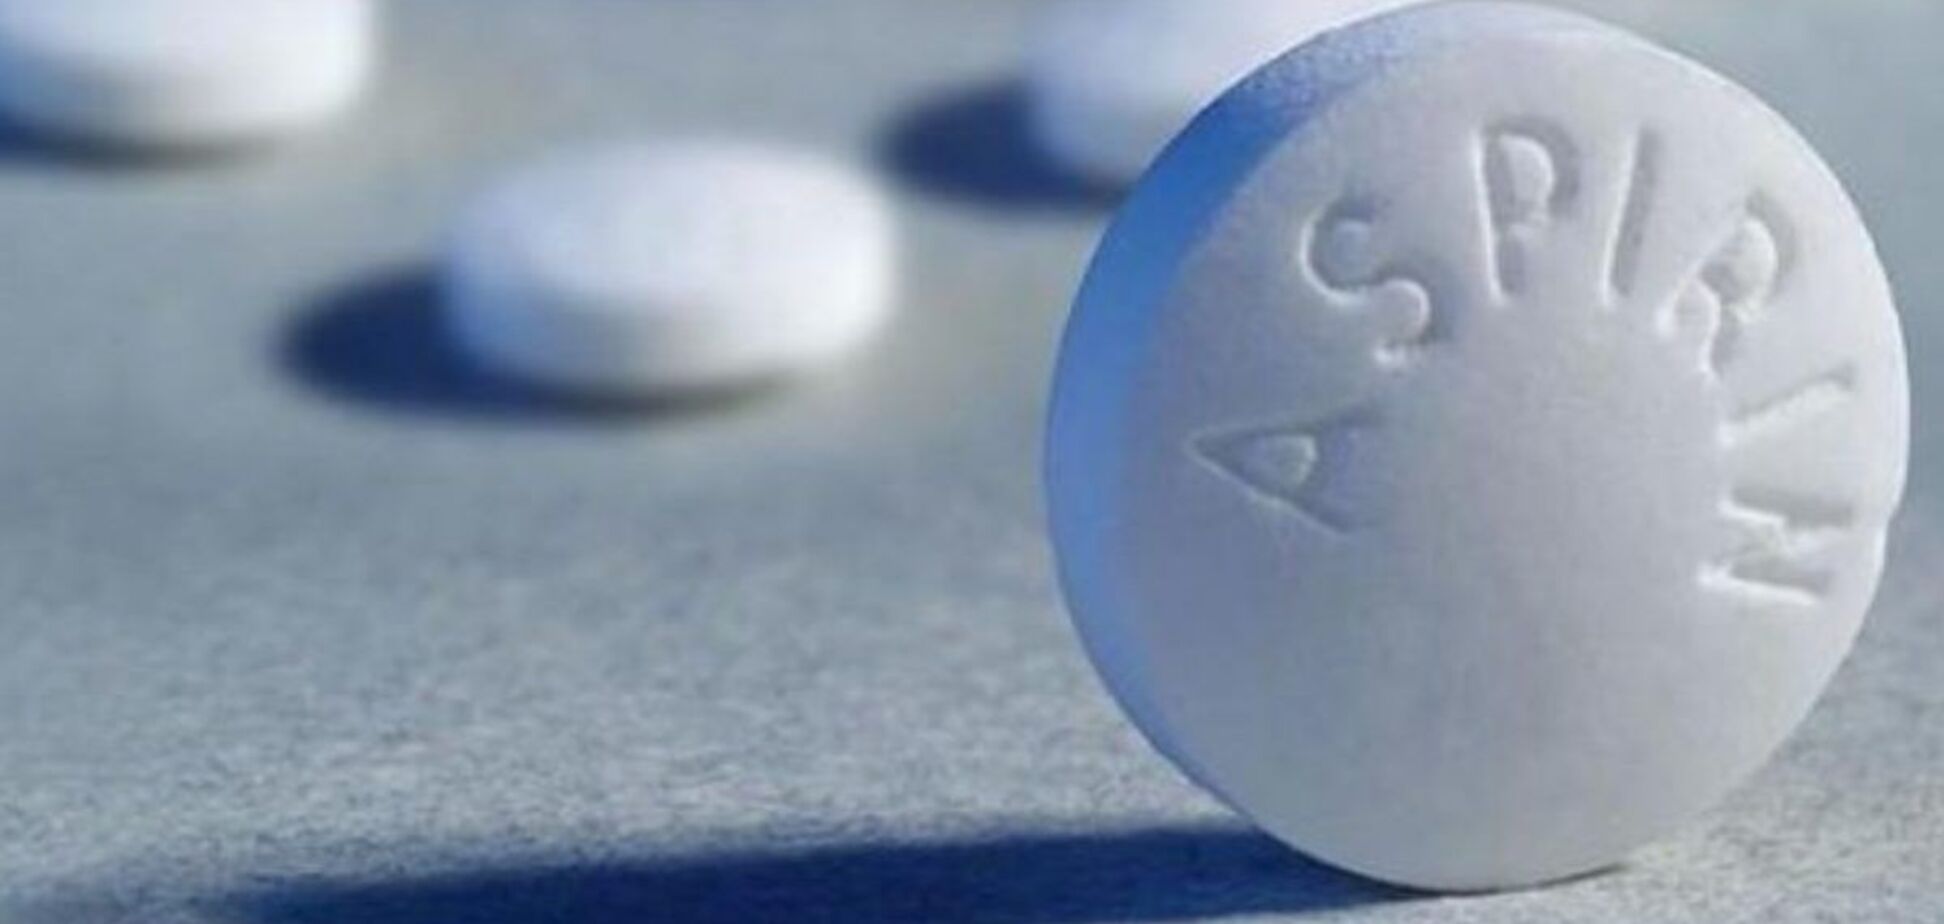 Польза и риски приема аспирина для профилактики сердечно-сосудистой болезней